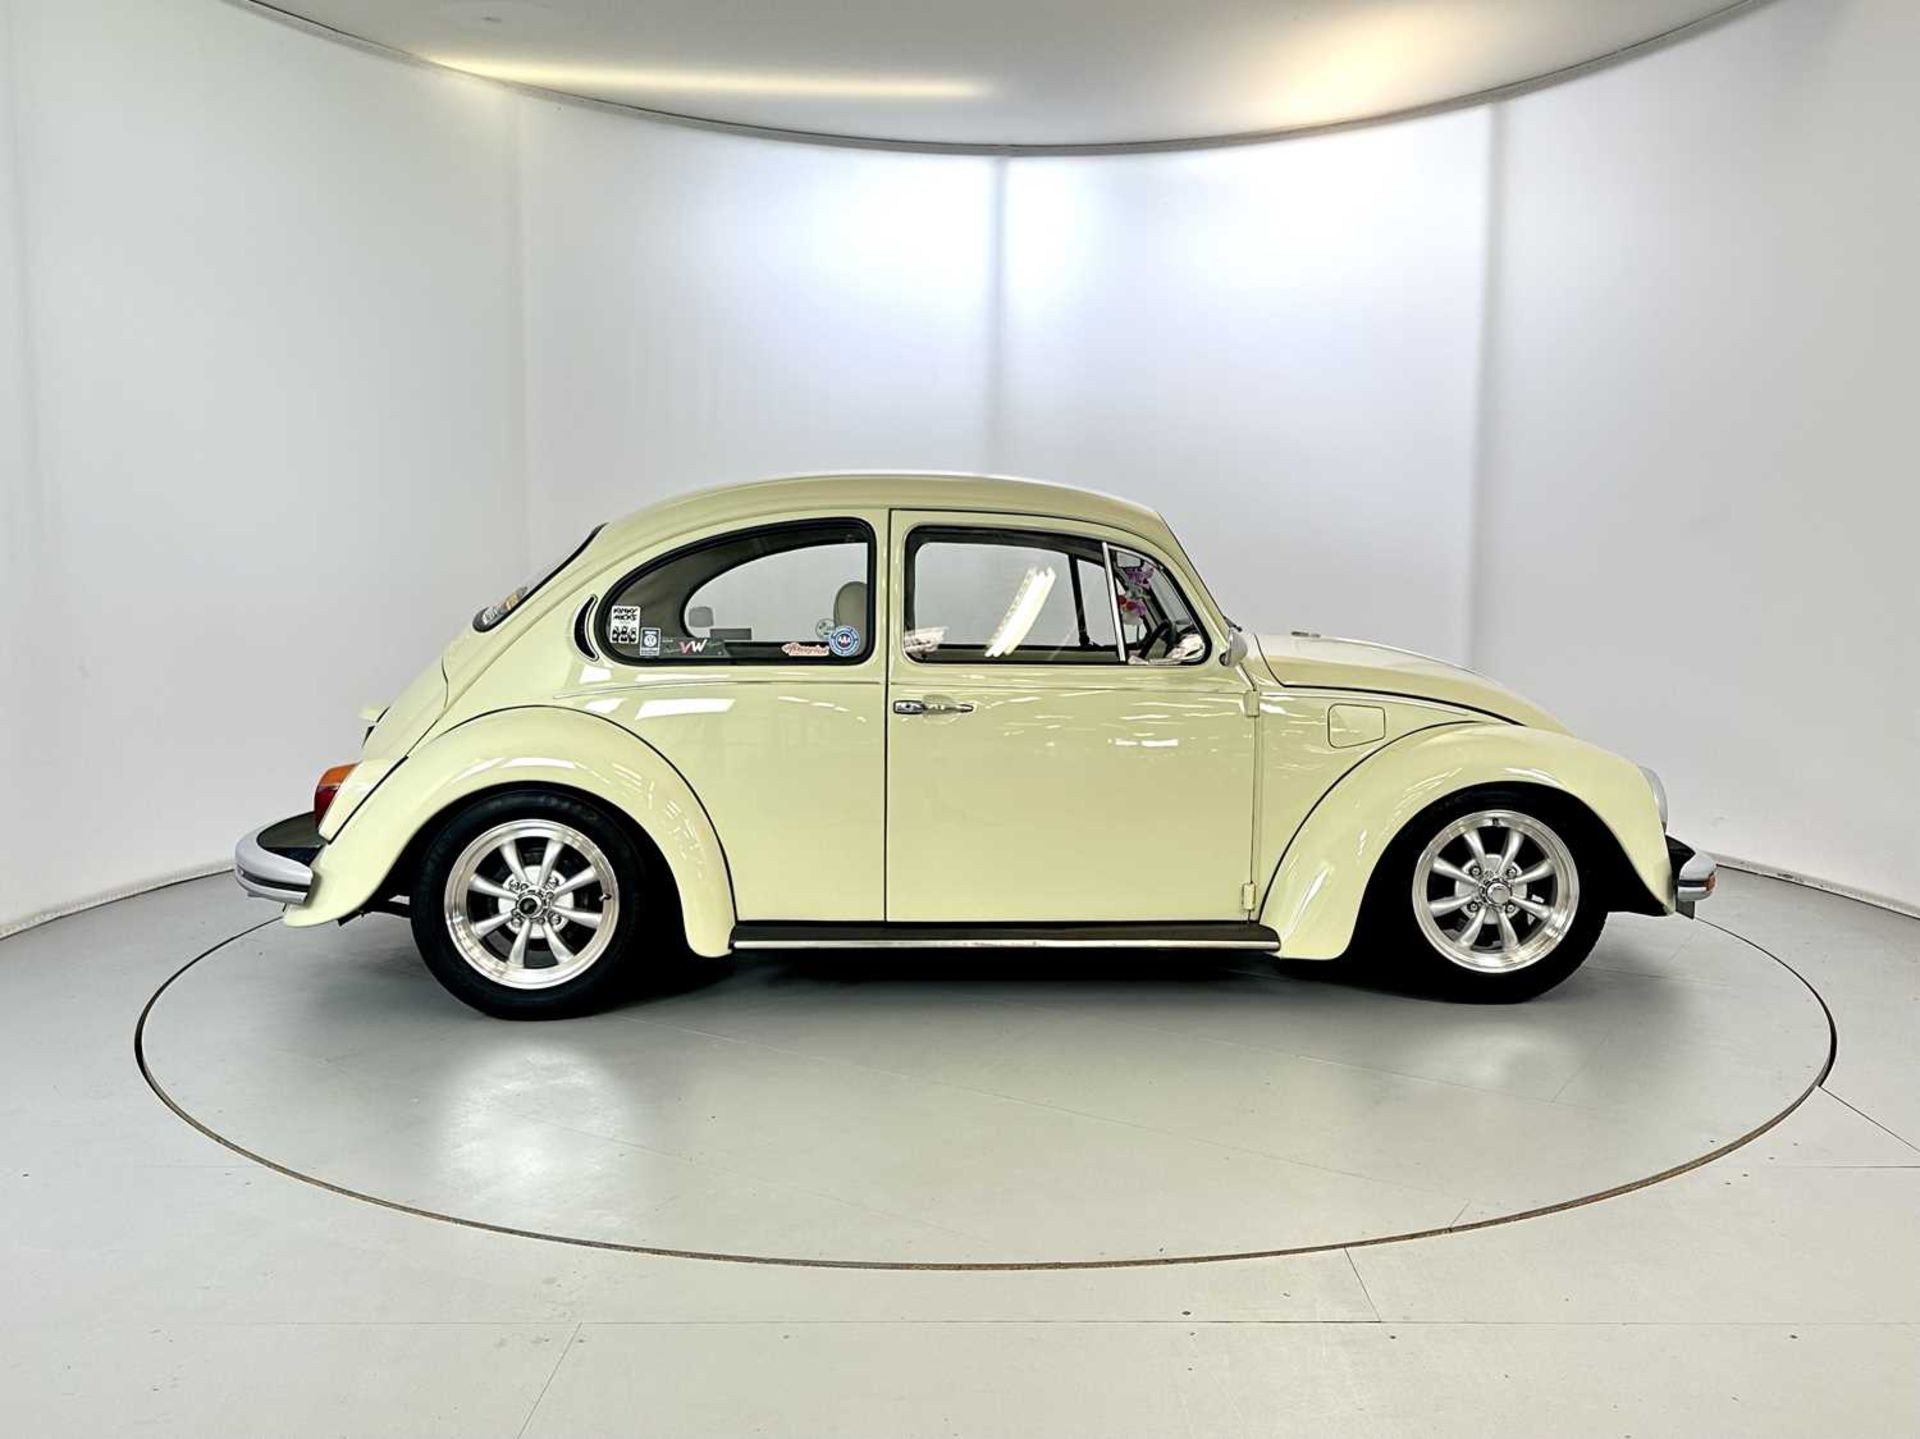 1971 Volkswagen Beetle - Image 11 of 30